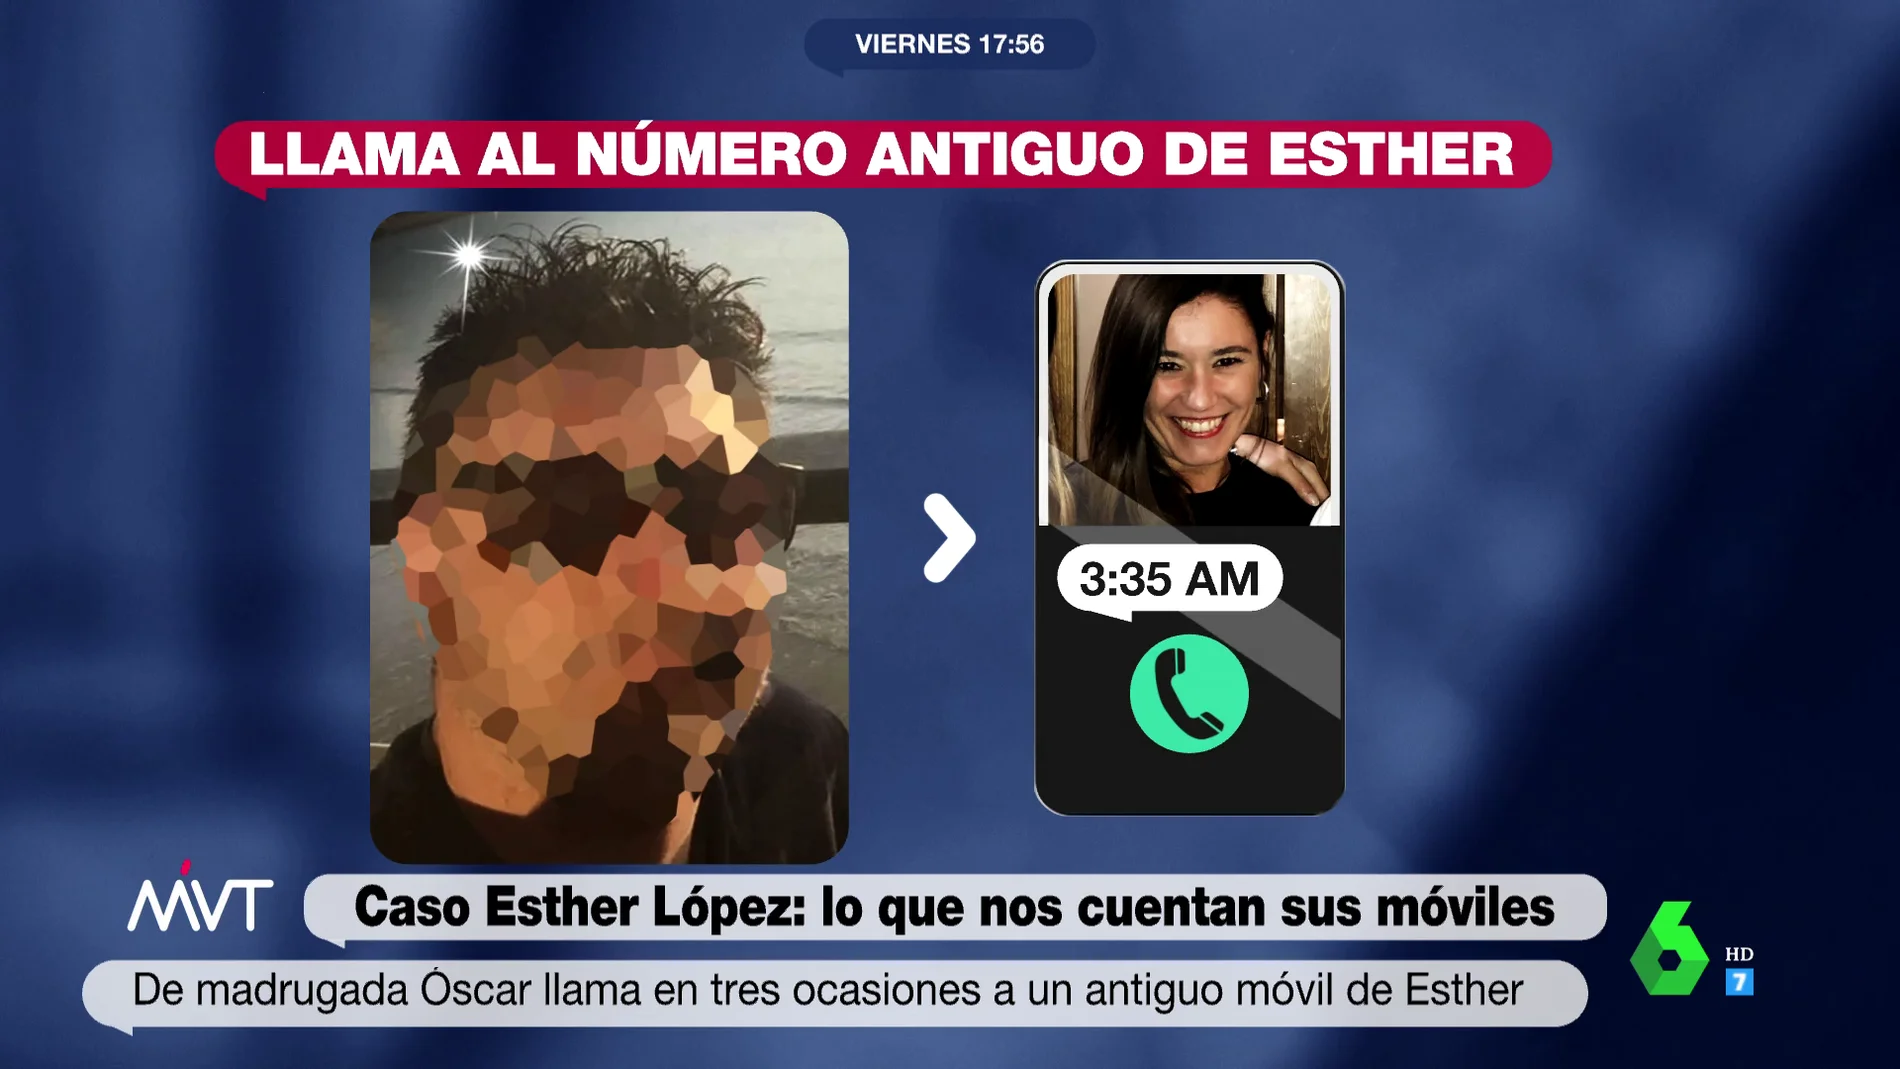 Cronología de los pasos de Óscar la noche de la muerte de Esther López: la versión que contradice su móvil